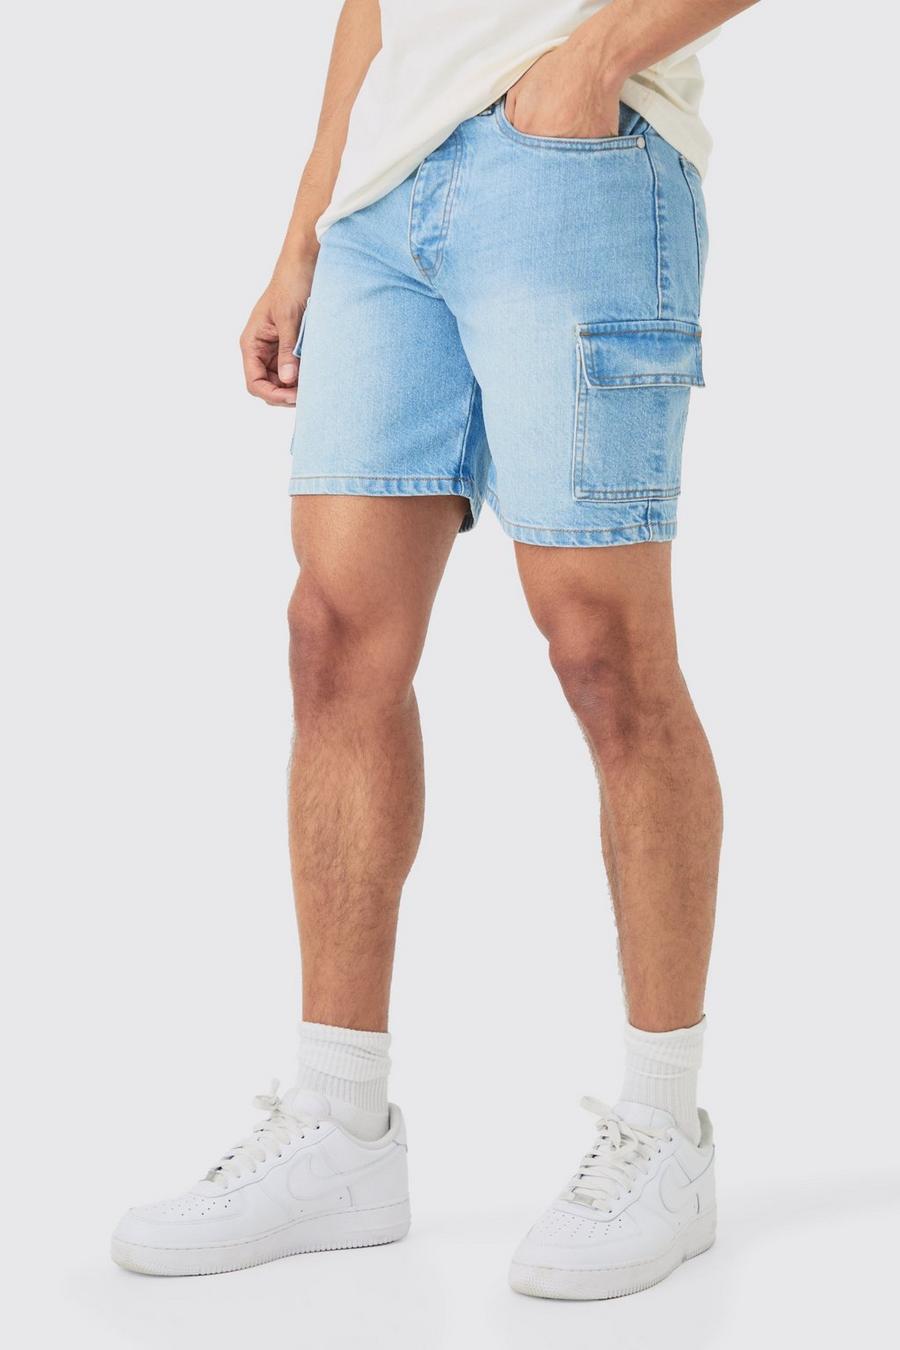 Pantalones cortos vaqueros cargo ajustados sin tratar en azul claro, Light blue